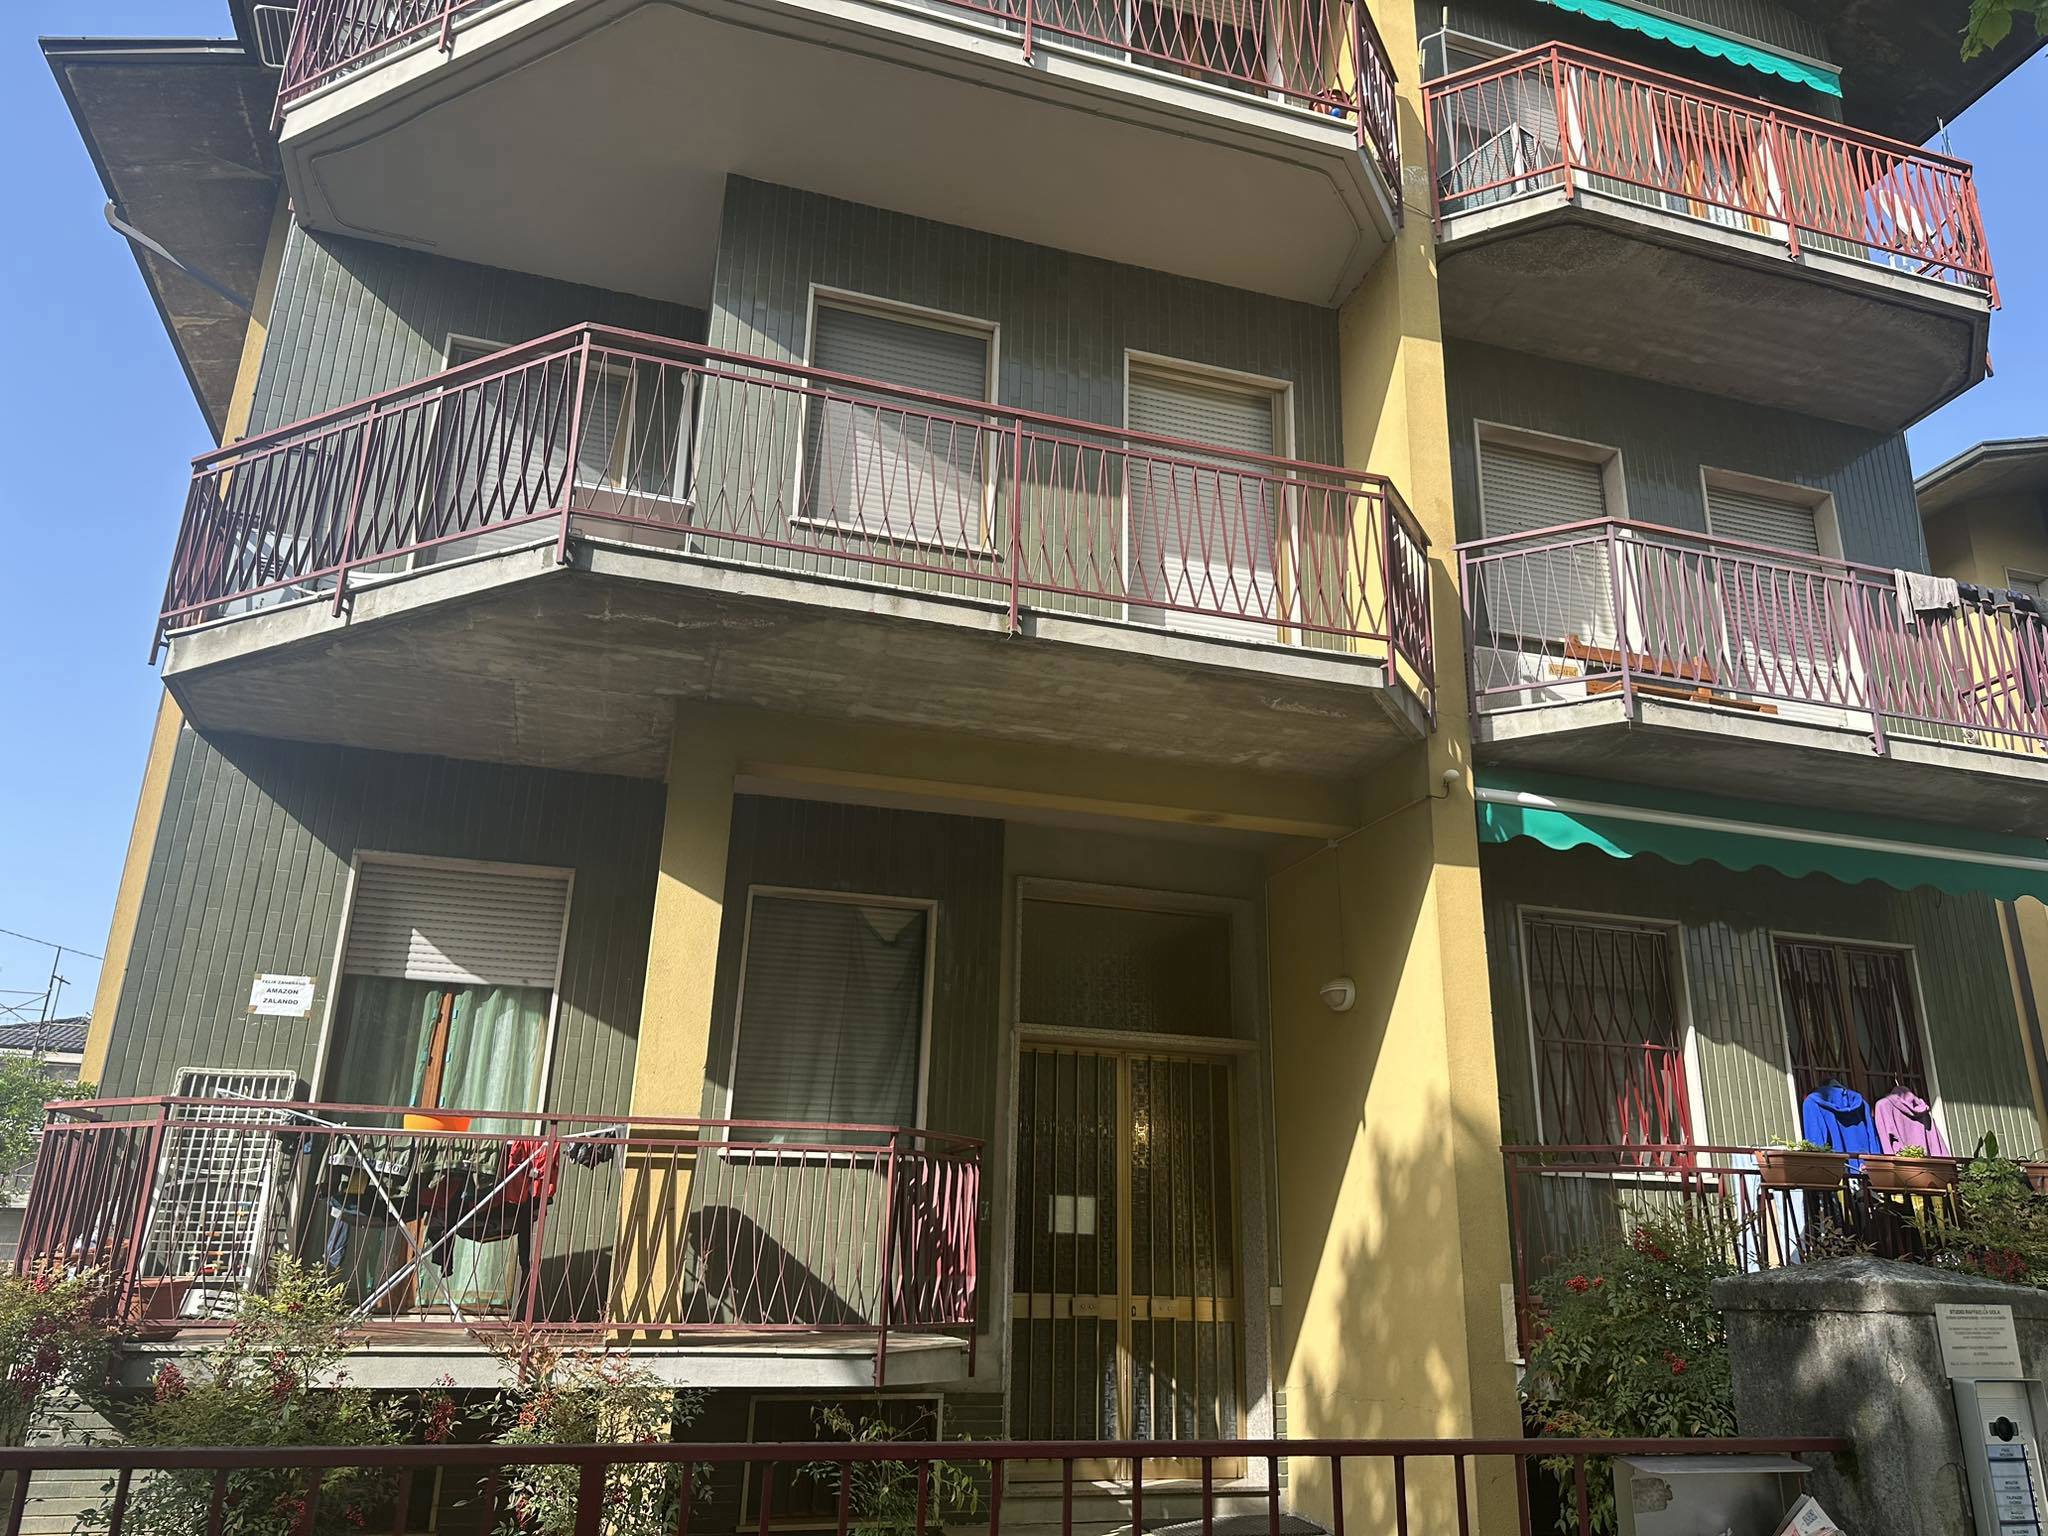 Appartamento in vendita a Stradella (PV)